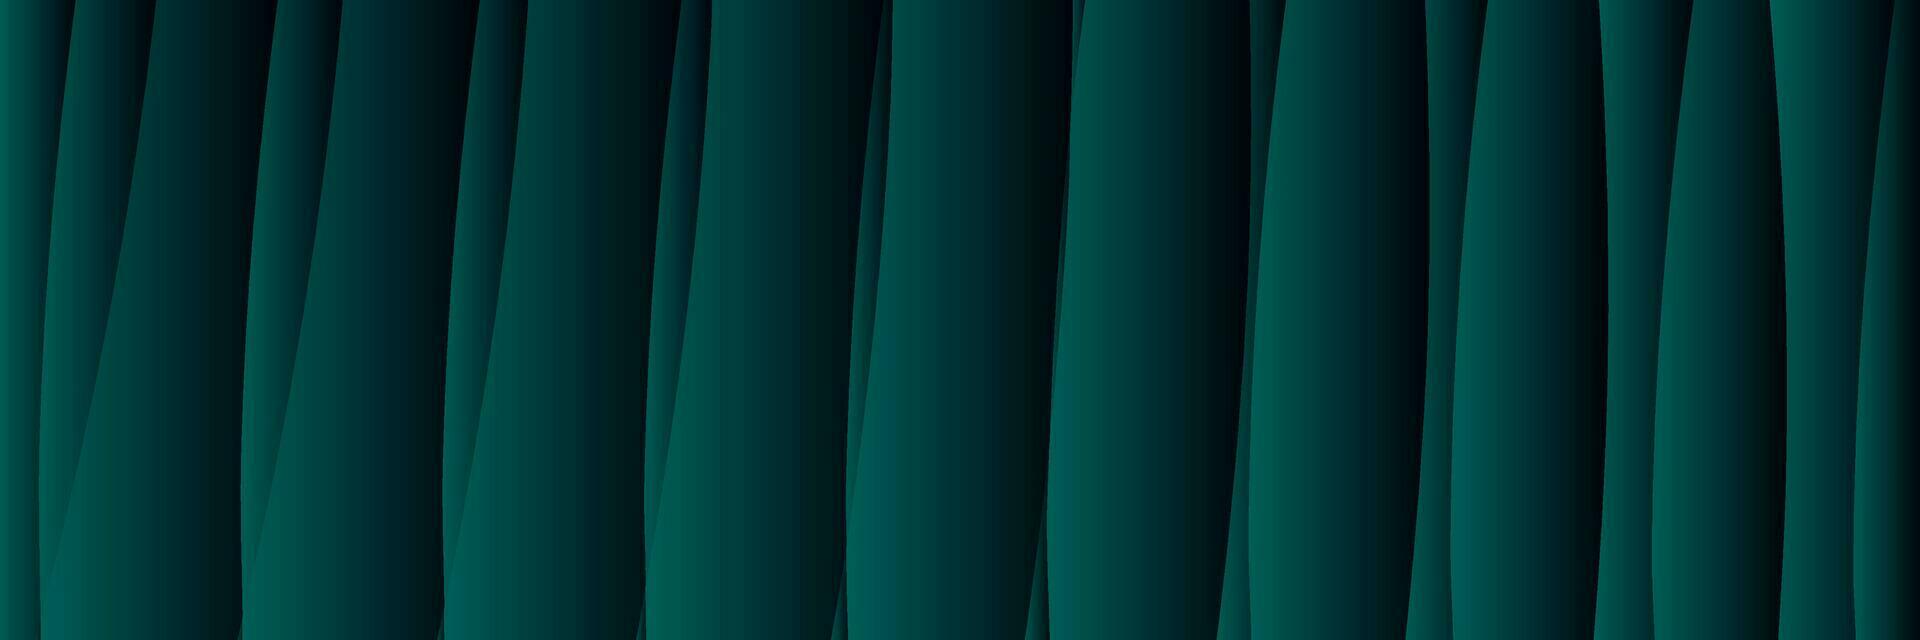 abstrakt elegant mörk grön lutning bakgrund vektor